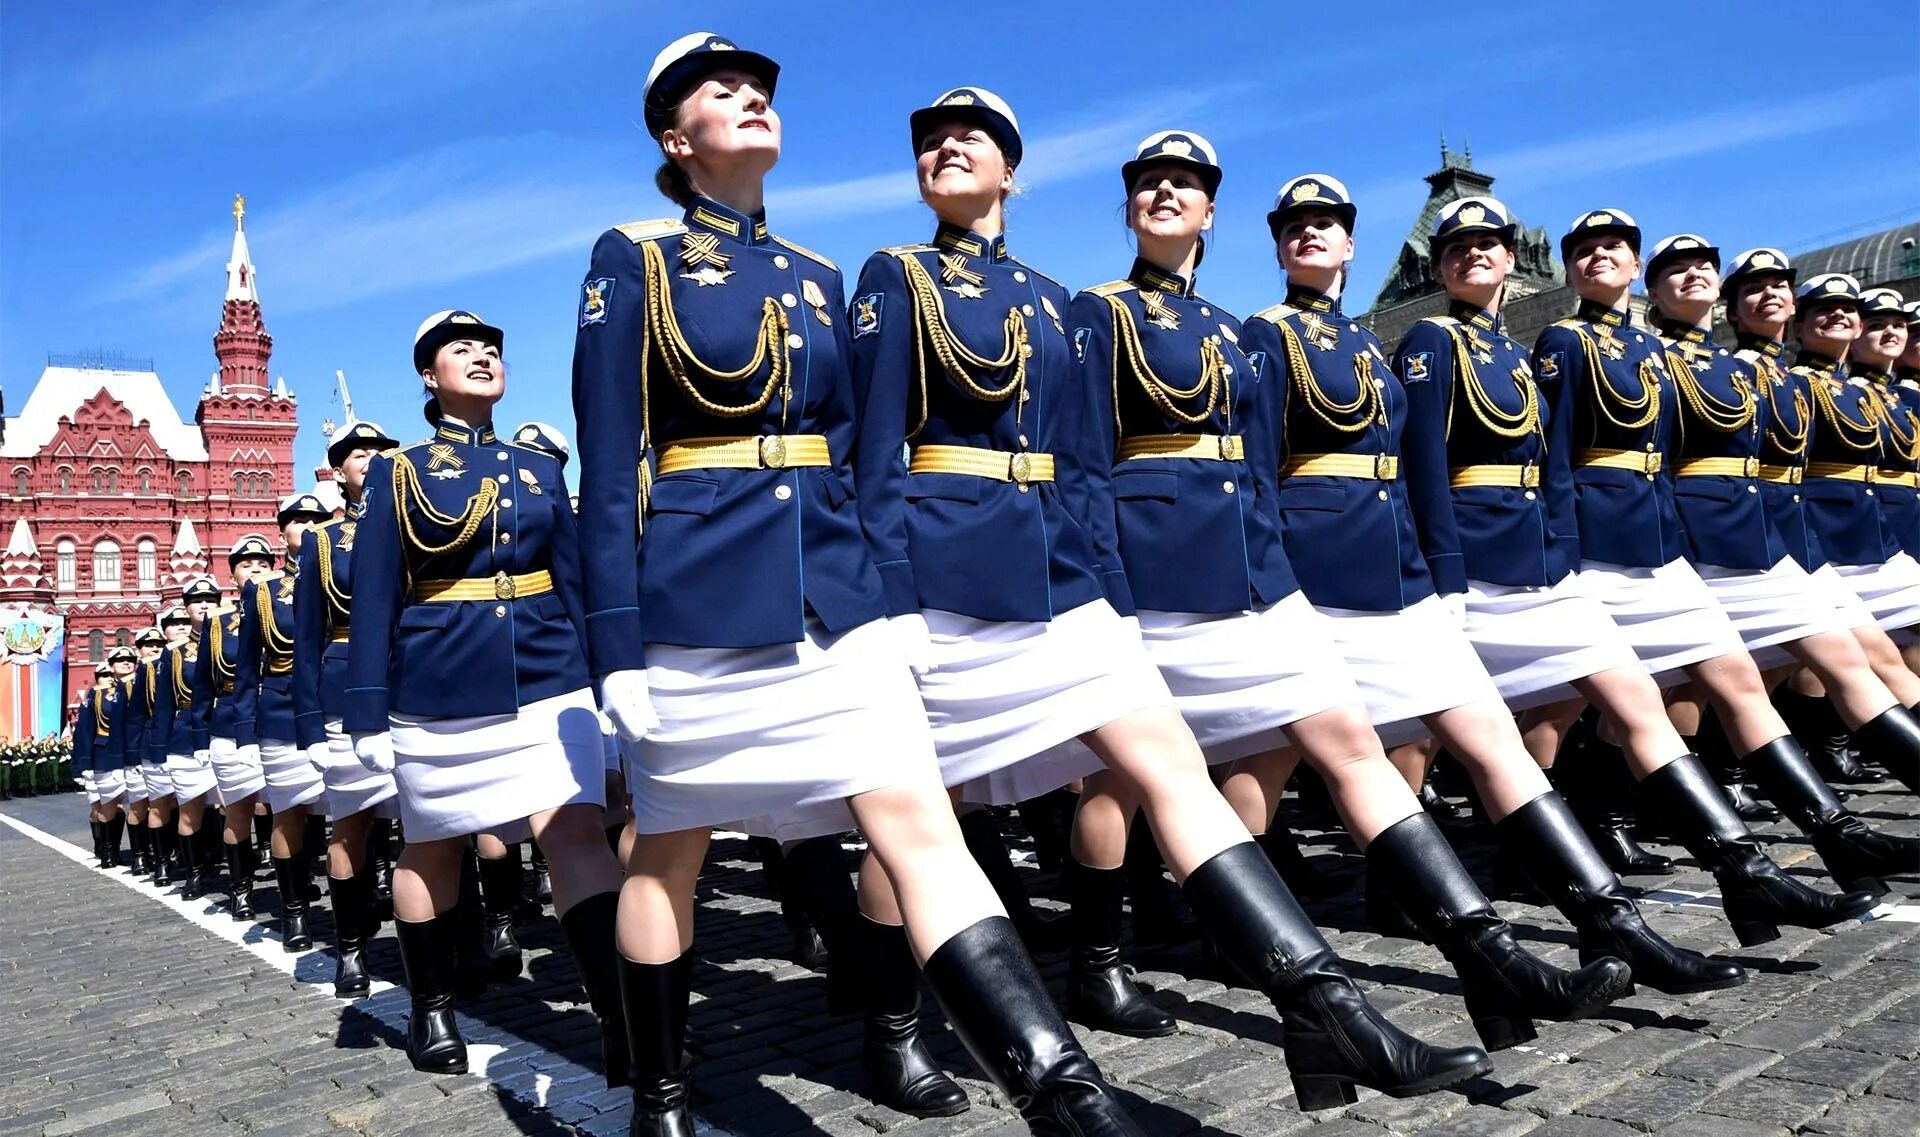 Женская парадная Военная форма. Девушки на параде. Девушки военные на параде. Парадная форма женщин военнослужащих. Парад девушек видео